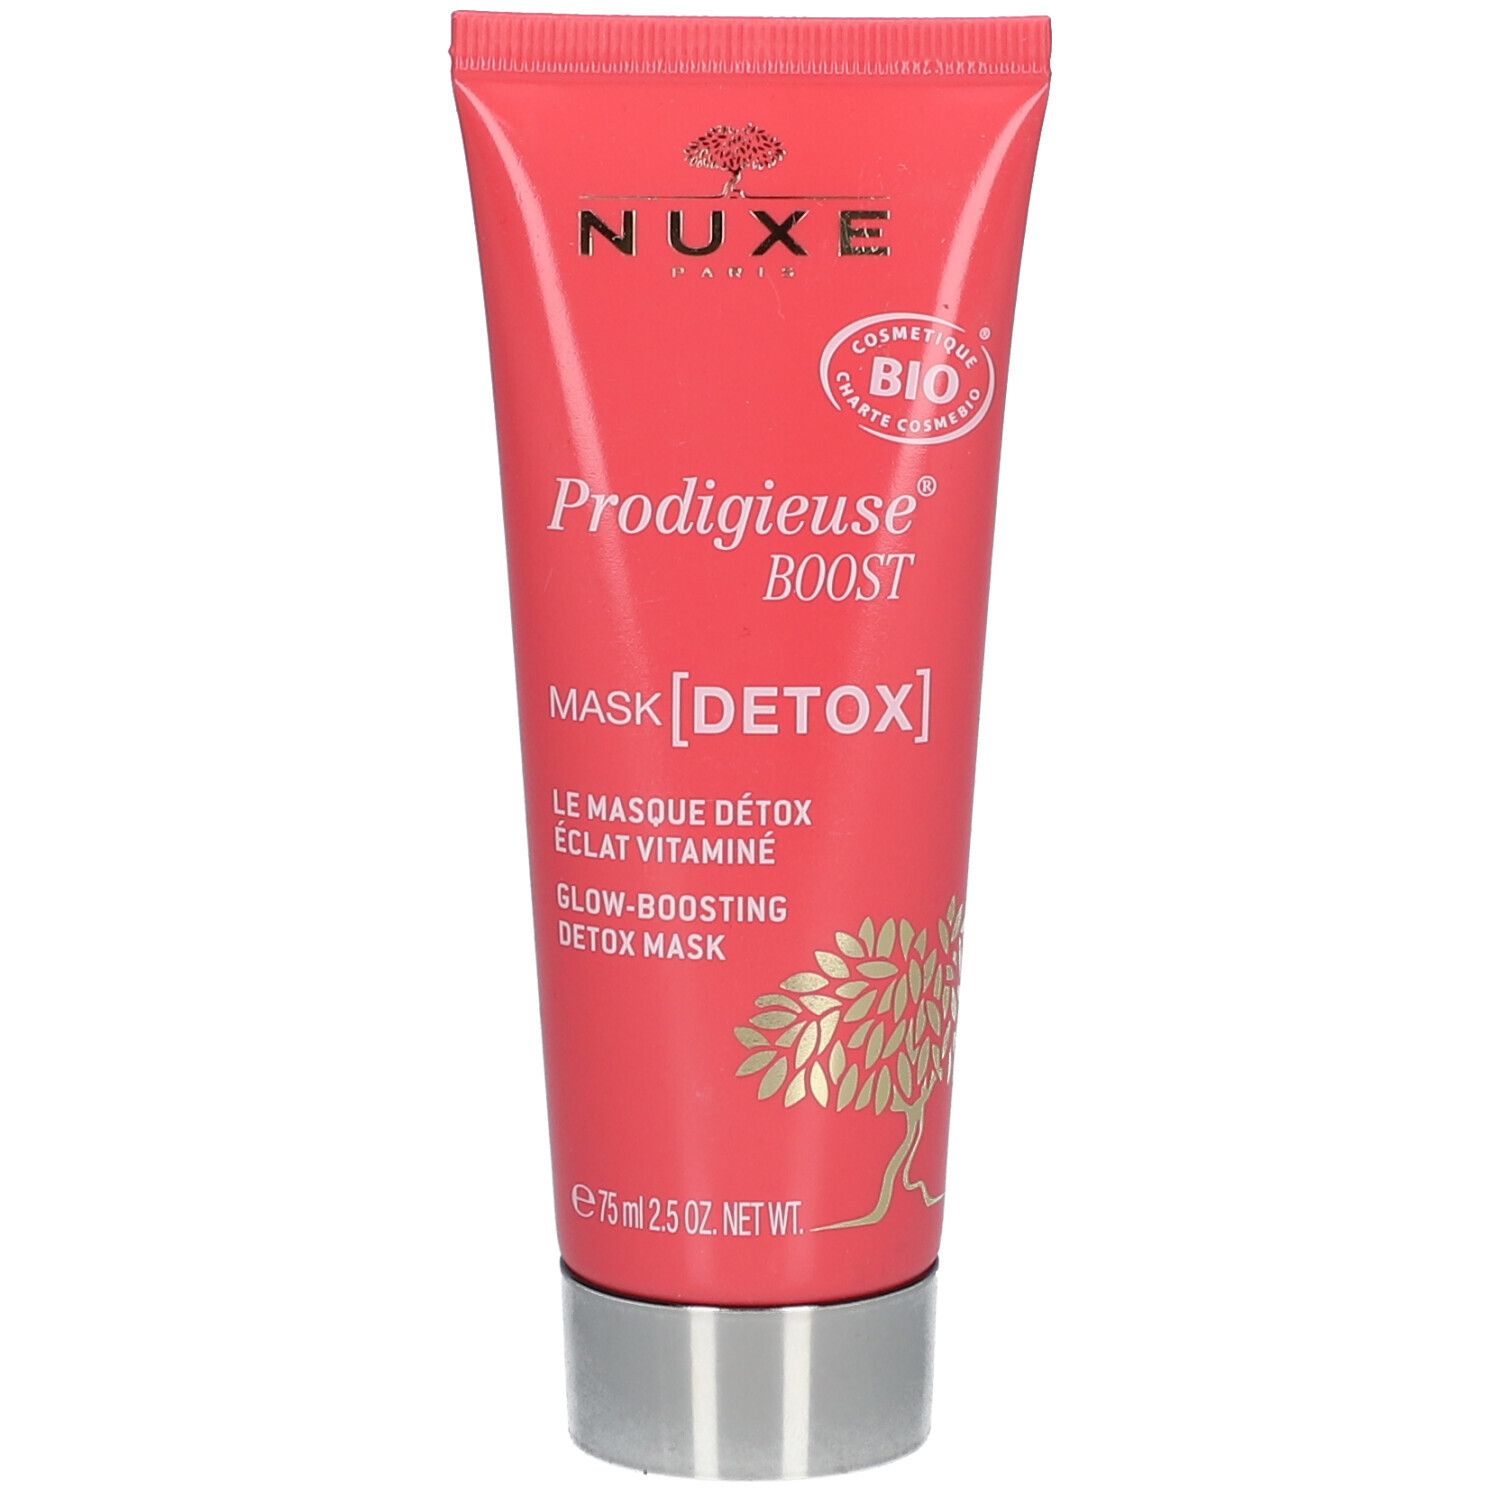 Nuxe Masque Détox Eclat Vitaminé, Prodigieuse® Boost